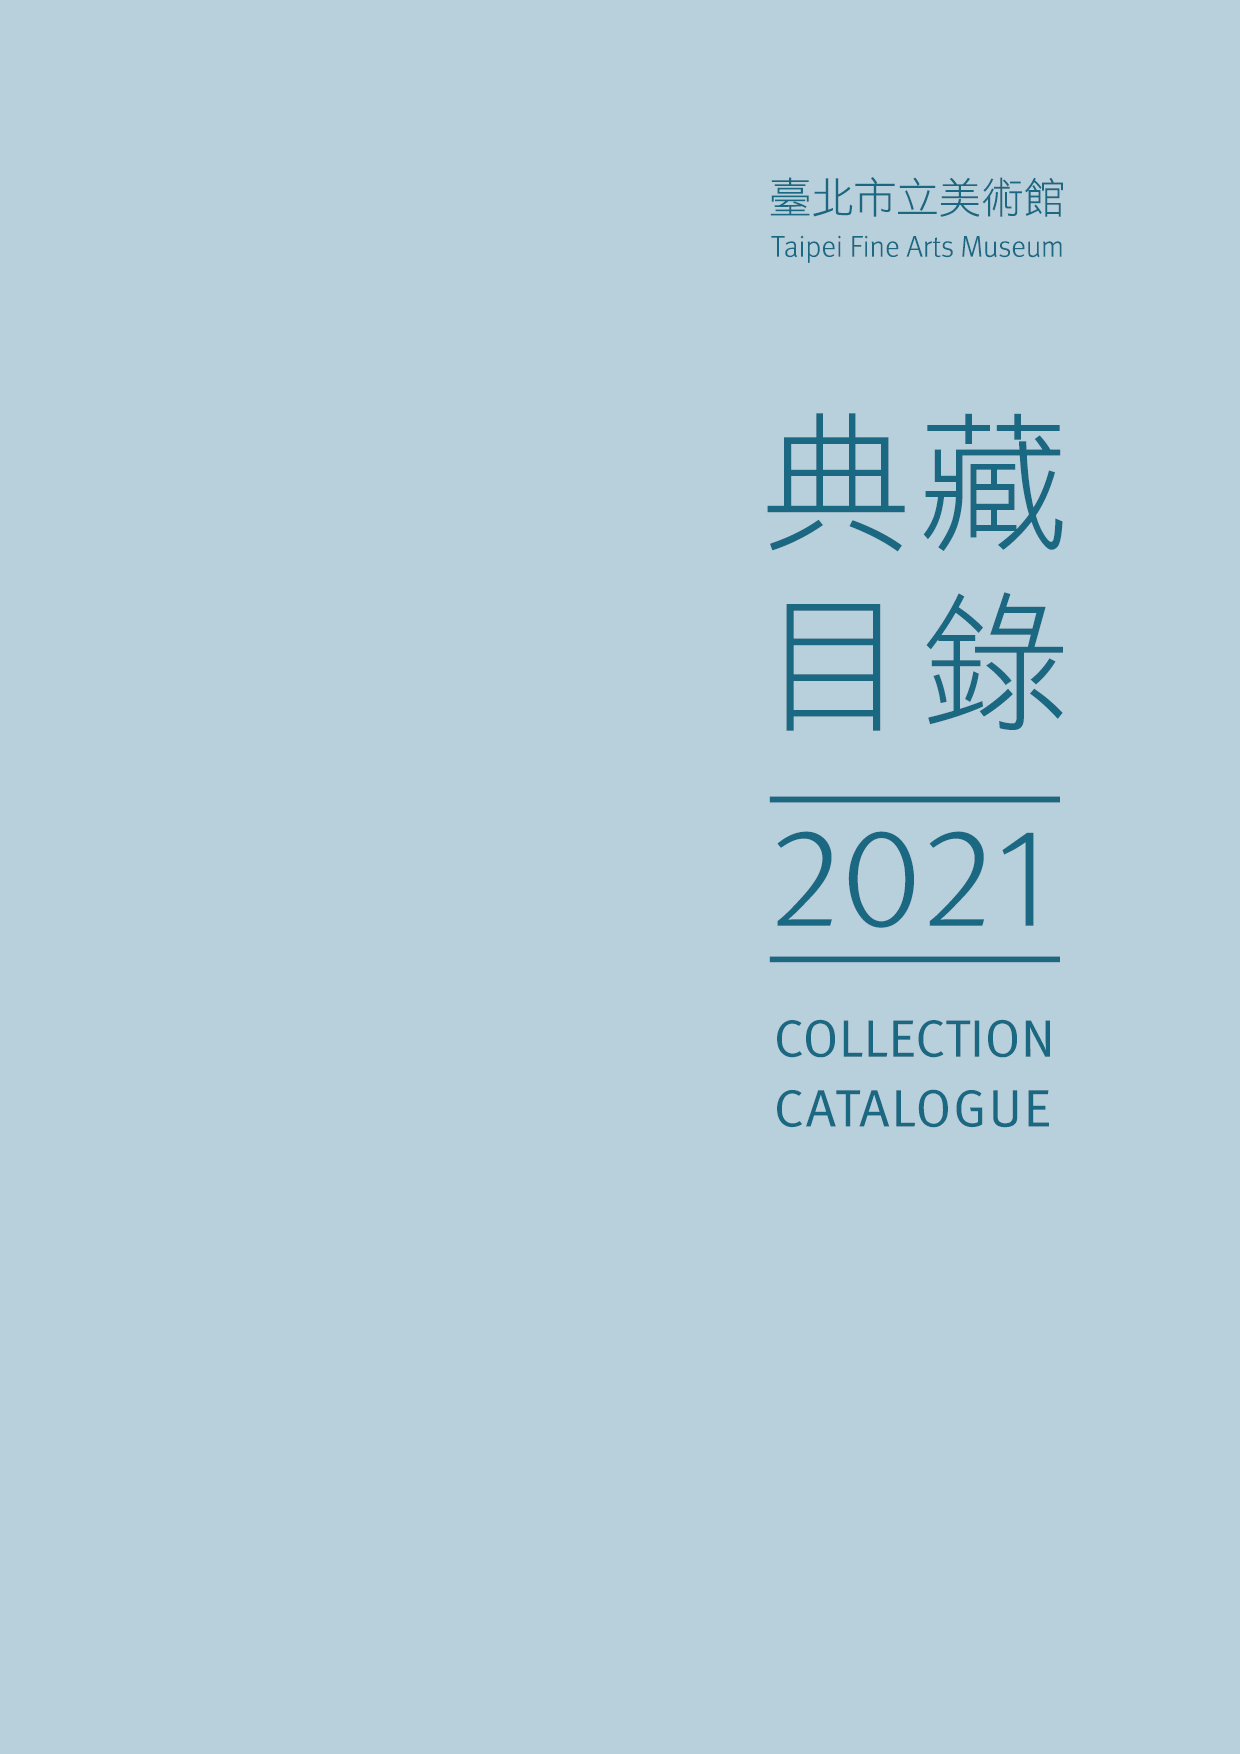 臺北市立美術館典藏目錄110(2021) 的圖說